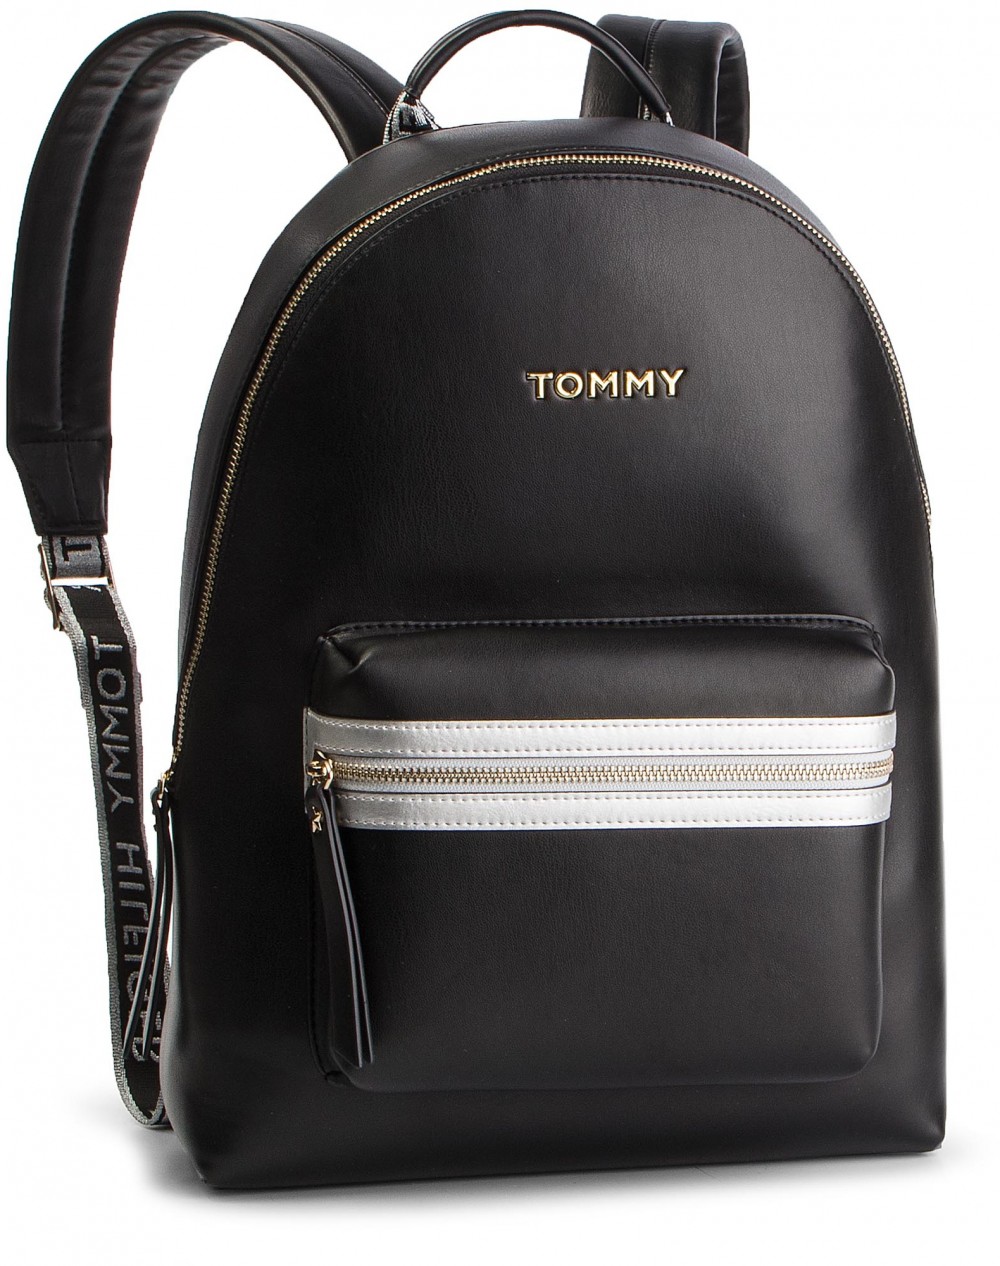 Hátizsák TOMMY HILFIGER - Iconic Tommy Backpack AW0AW06404 002